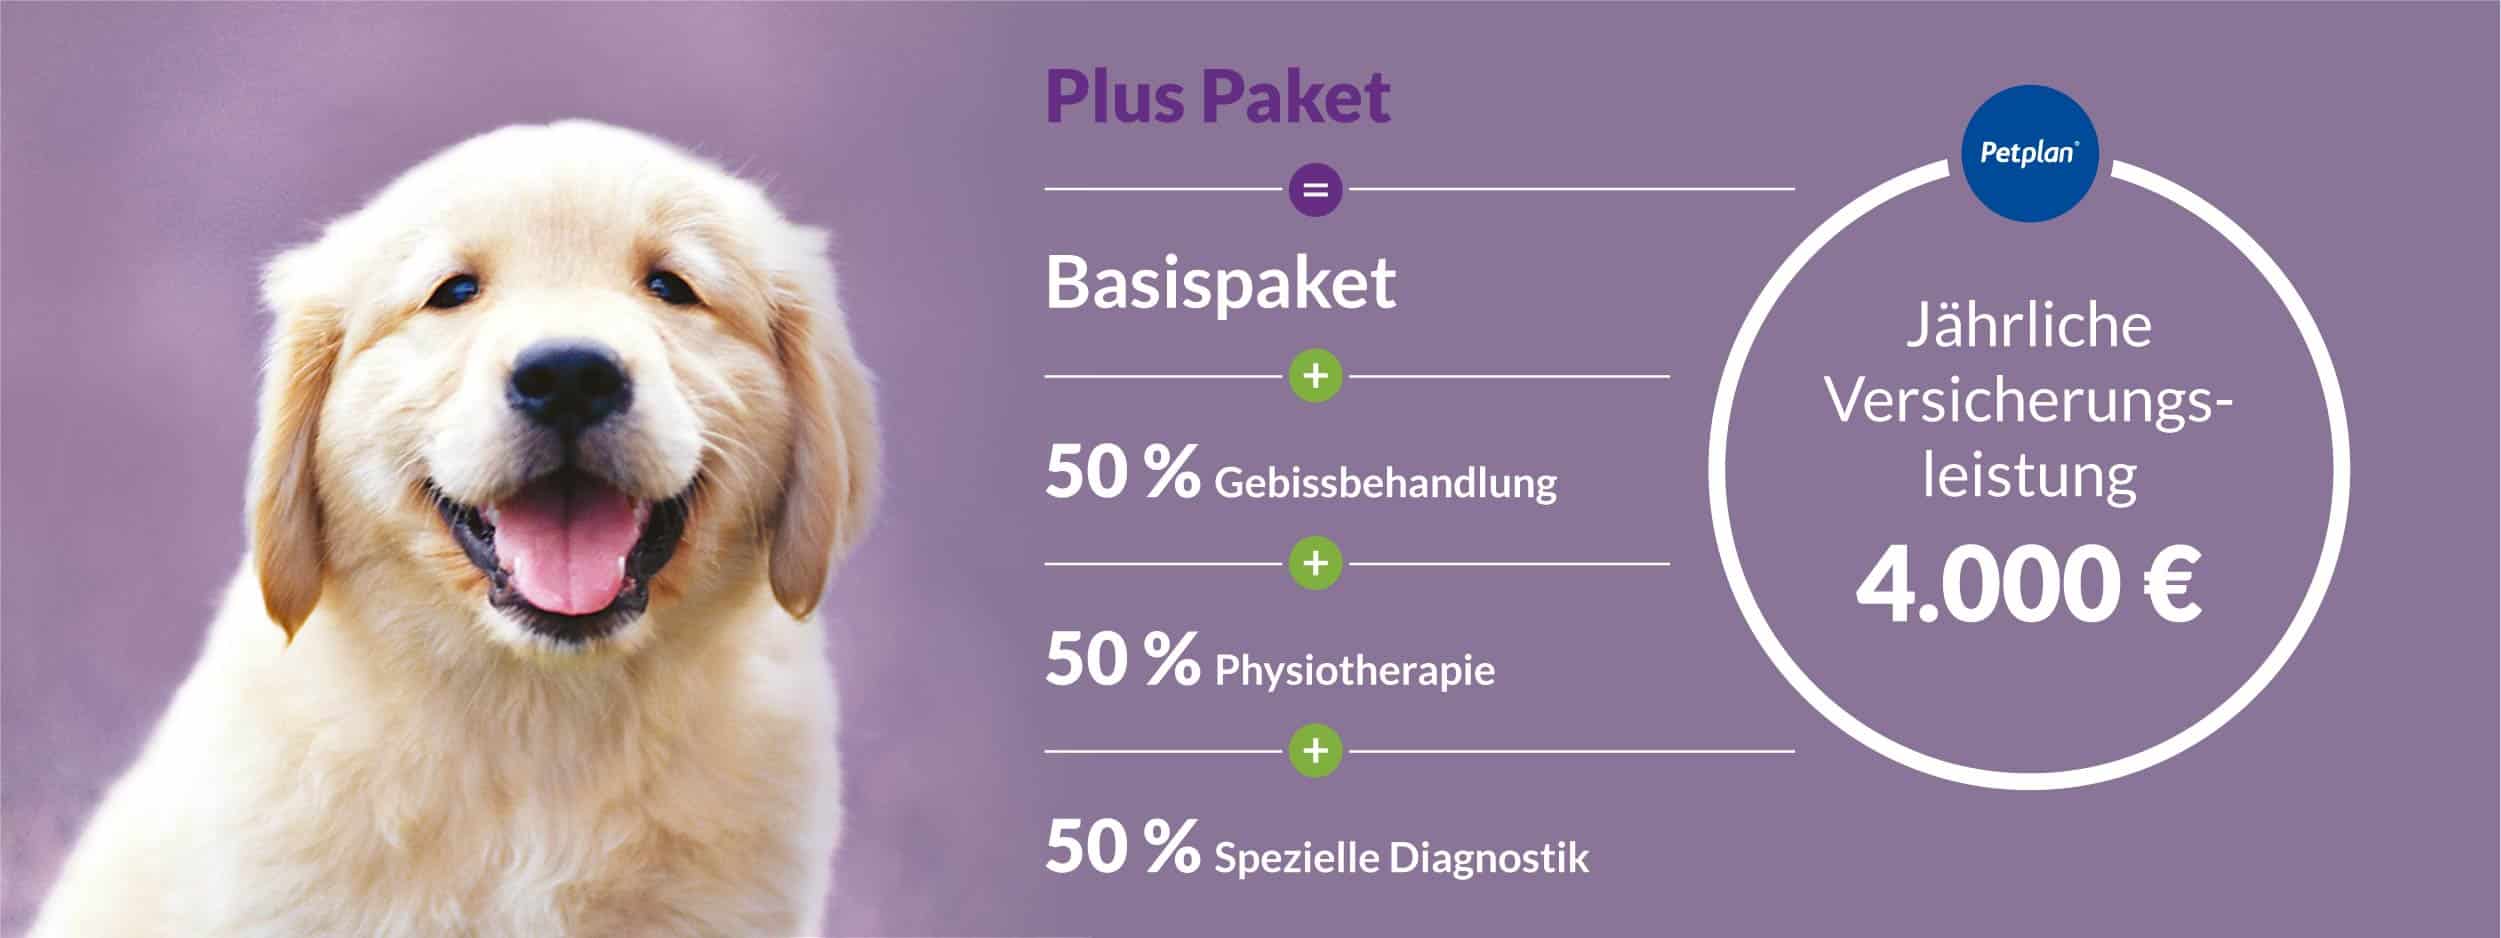 Petplan Plus – die Hundekrankenversicherung, die fast alles abdeckt